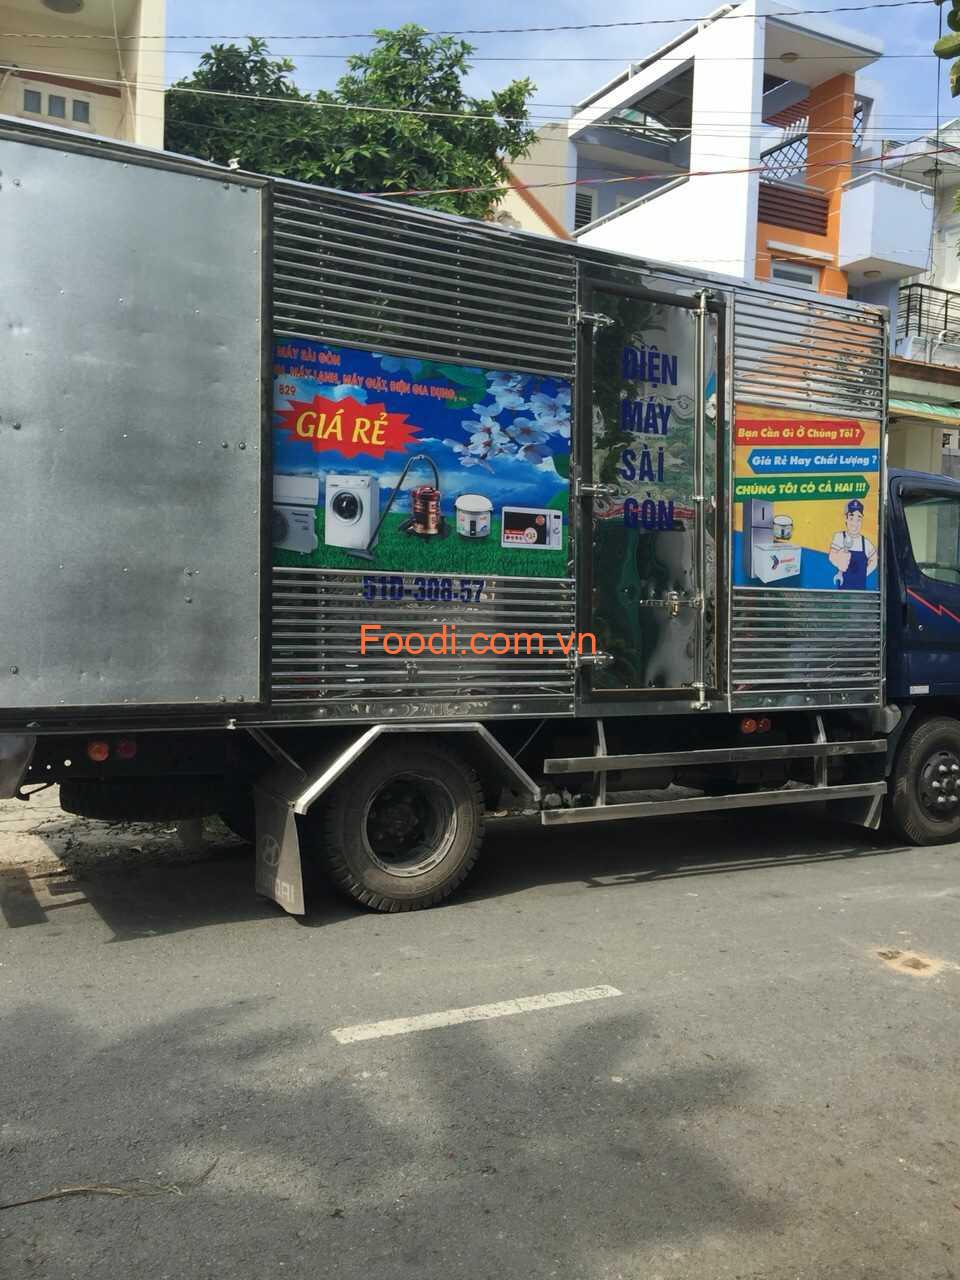 Top 20 Cửa hàng điện tử gần đây ở Sài Gòn -TPHCM giá rẻ chất lượng